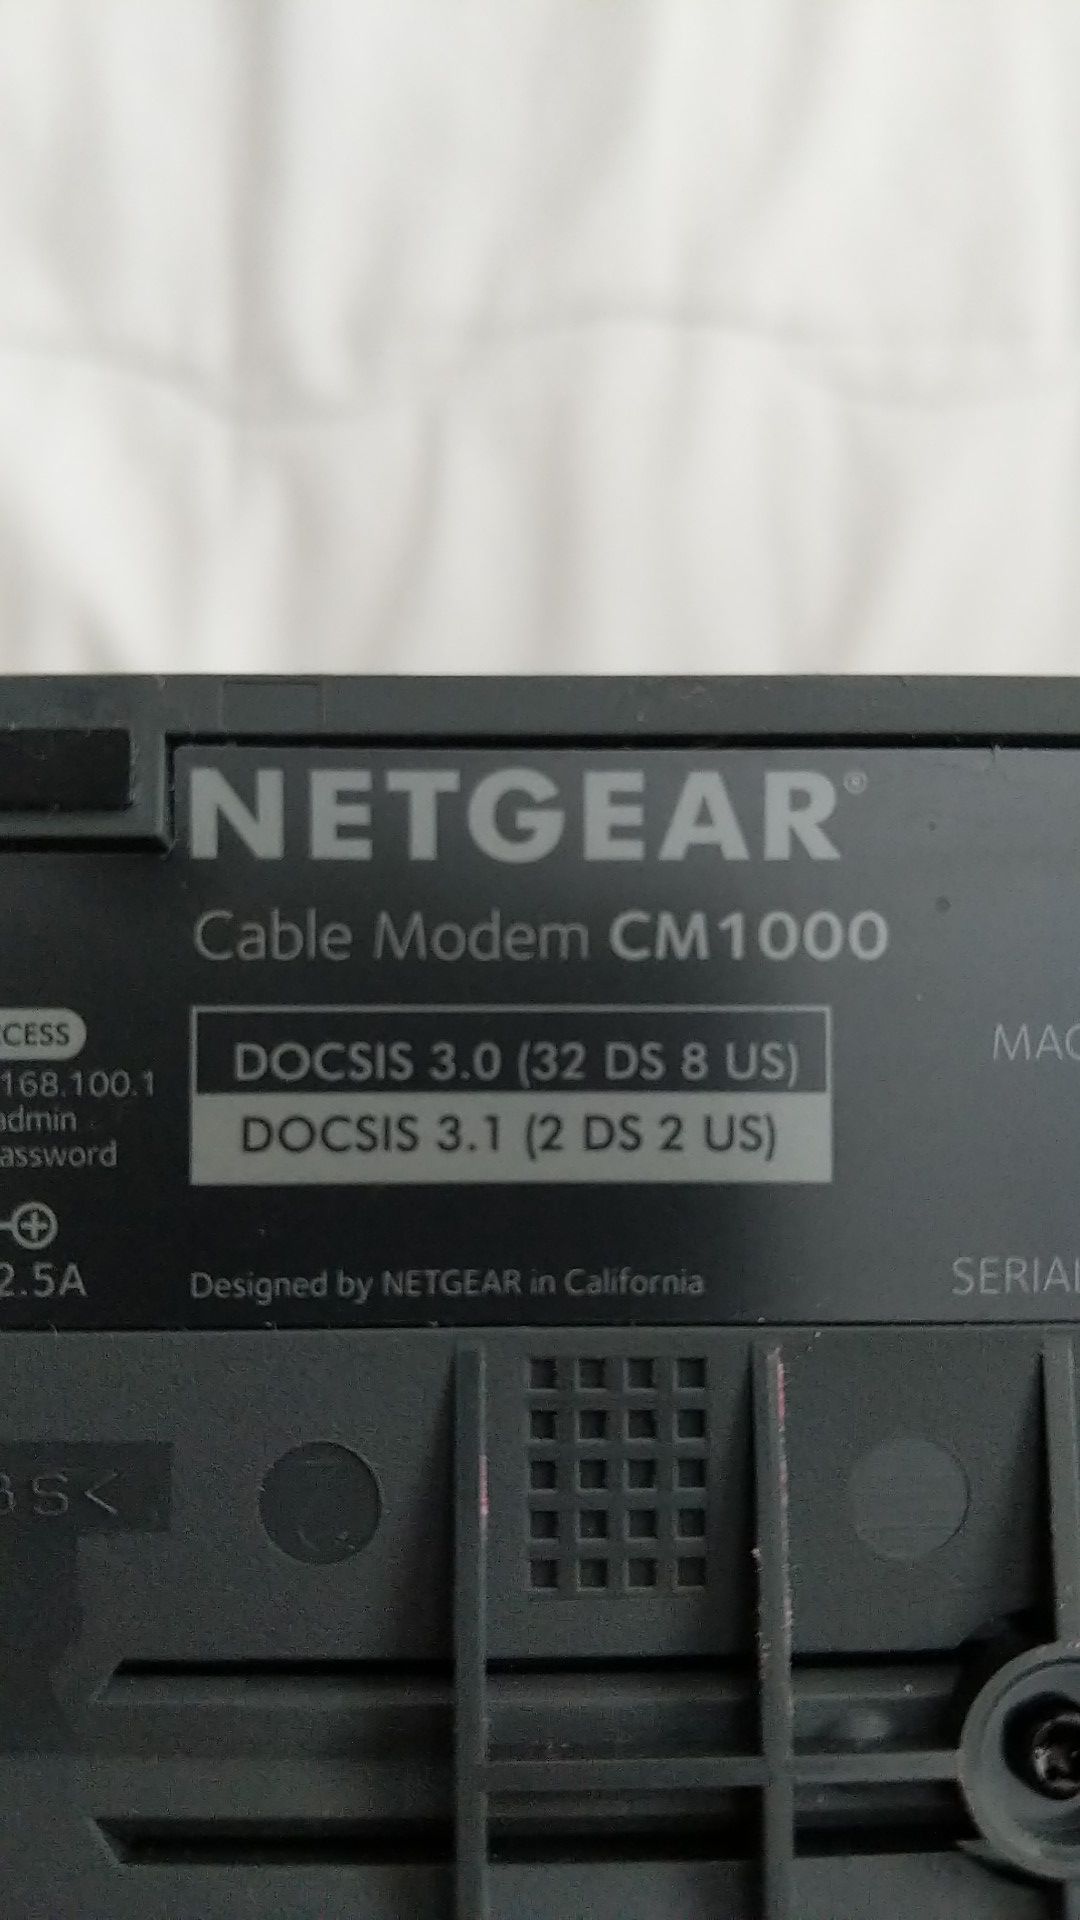 Netgear cm1000 docsis 3.1 cable modem. Works with Comcast gigabit internet